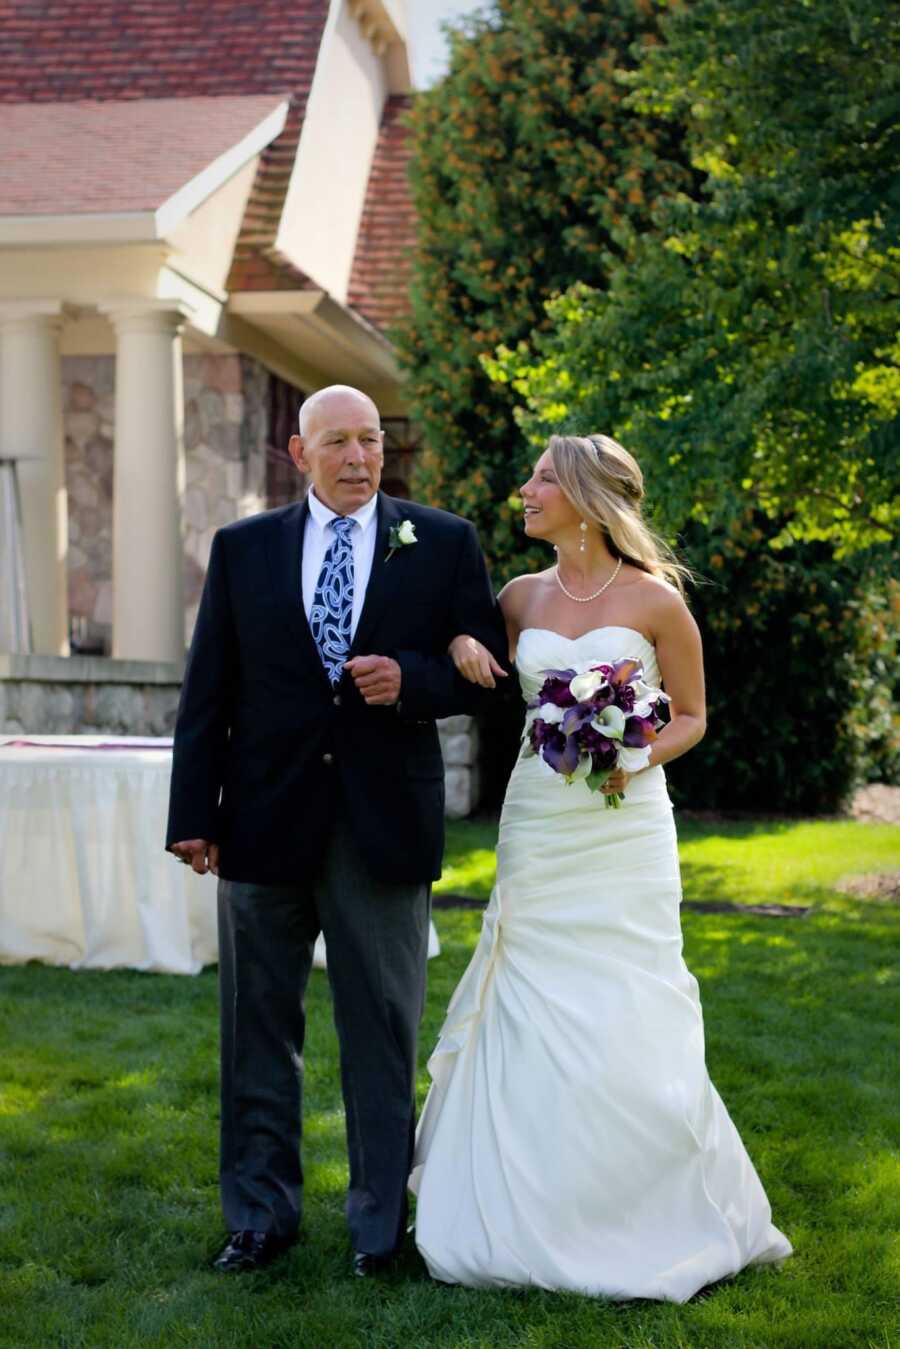 Dad walking daughter down wedding aisle